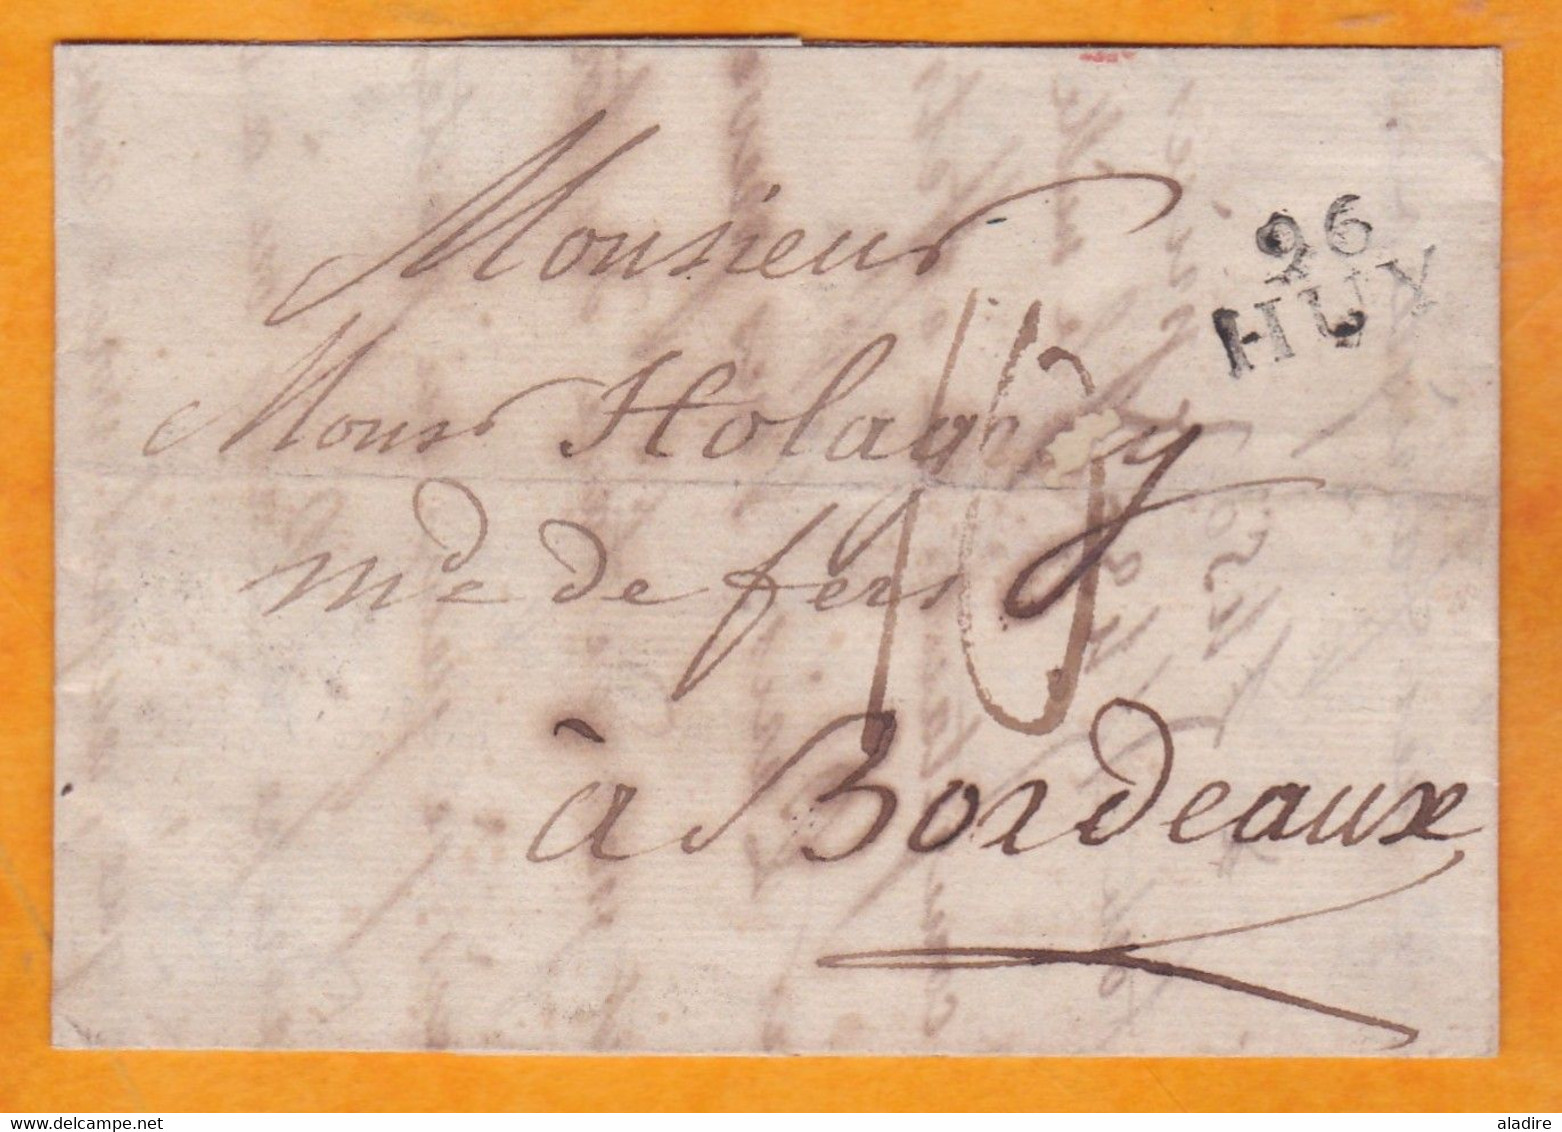 1810 Marque Postale 96 HUY, Auj.en Belgique, Départ Conquis De L'Ourthe, Vers Bordeaux - Holagray Marchand De Fers - 1792-1815: Départements Conquis